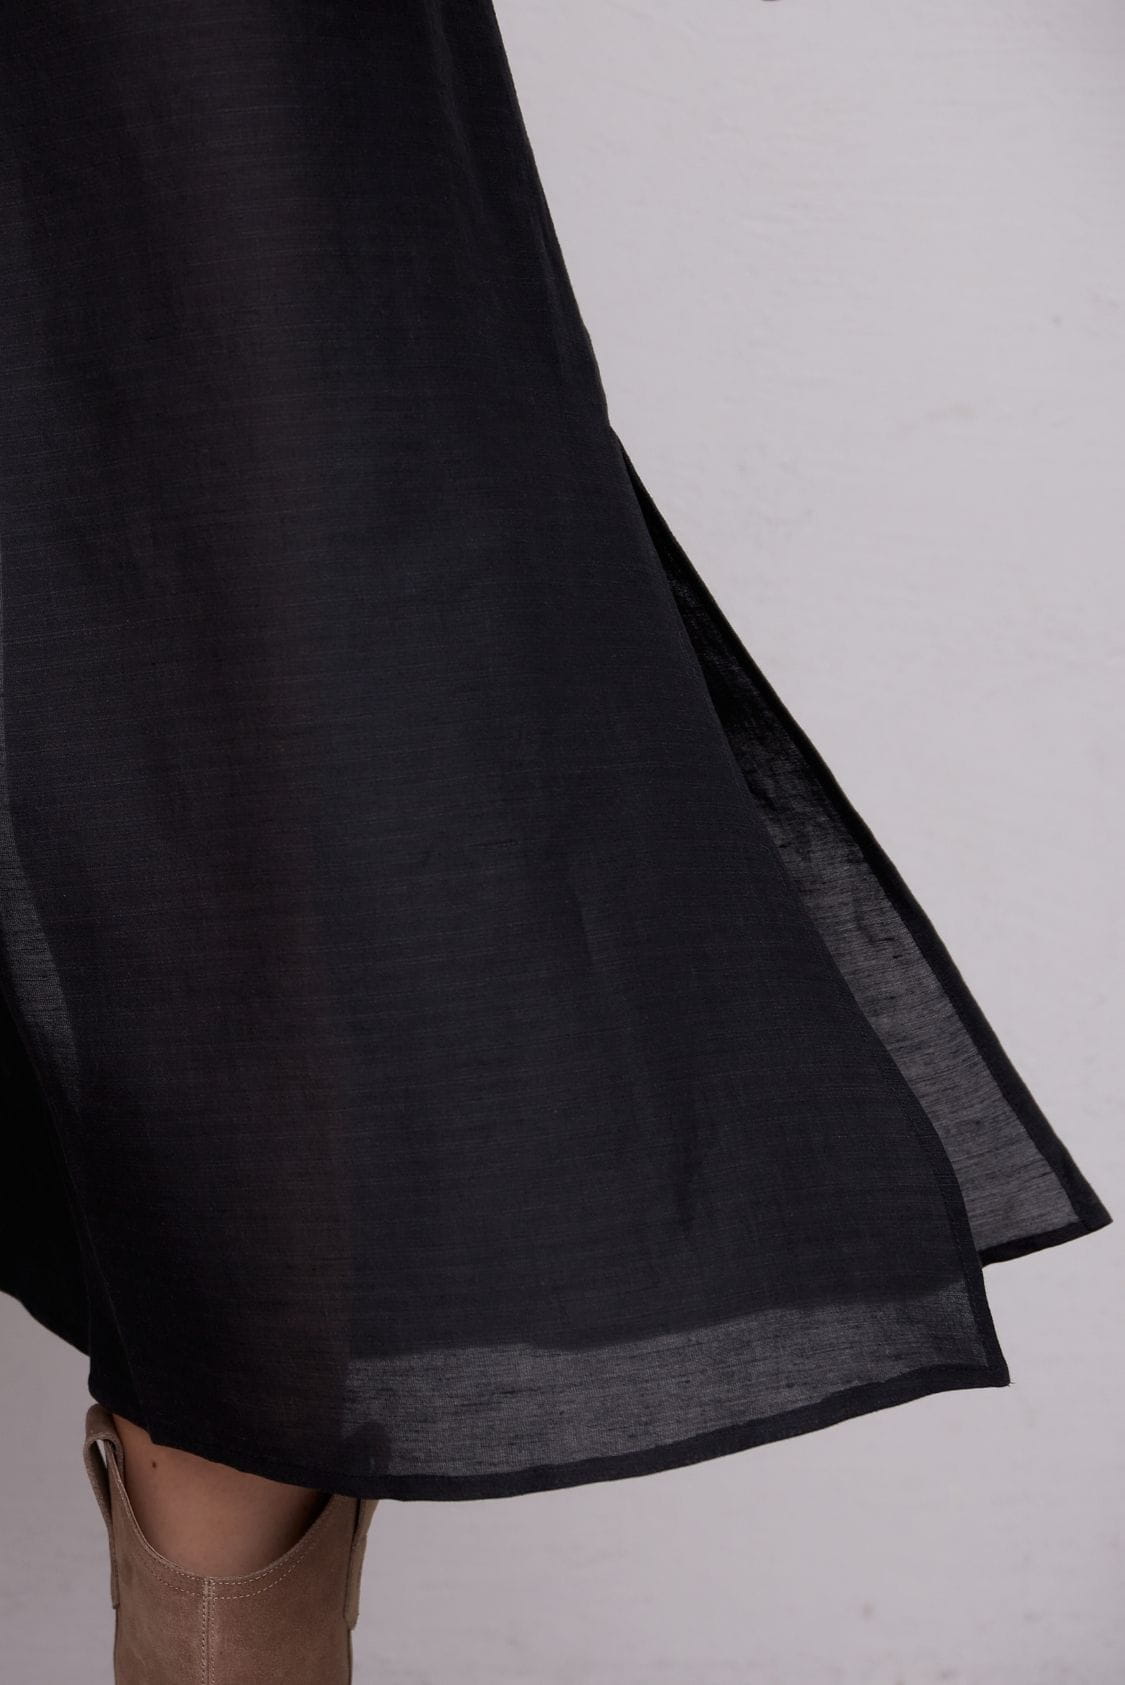 Sukienka koszulowa długa, maxi z lnu, czarna - Holystic